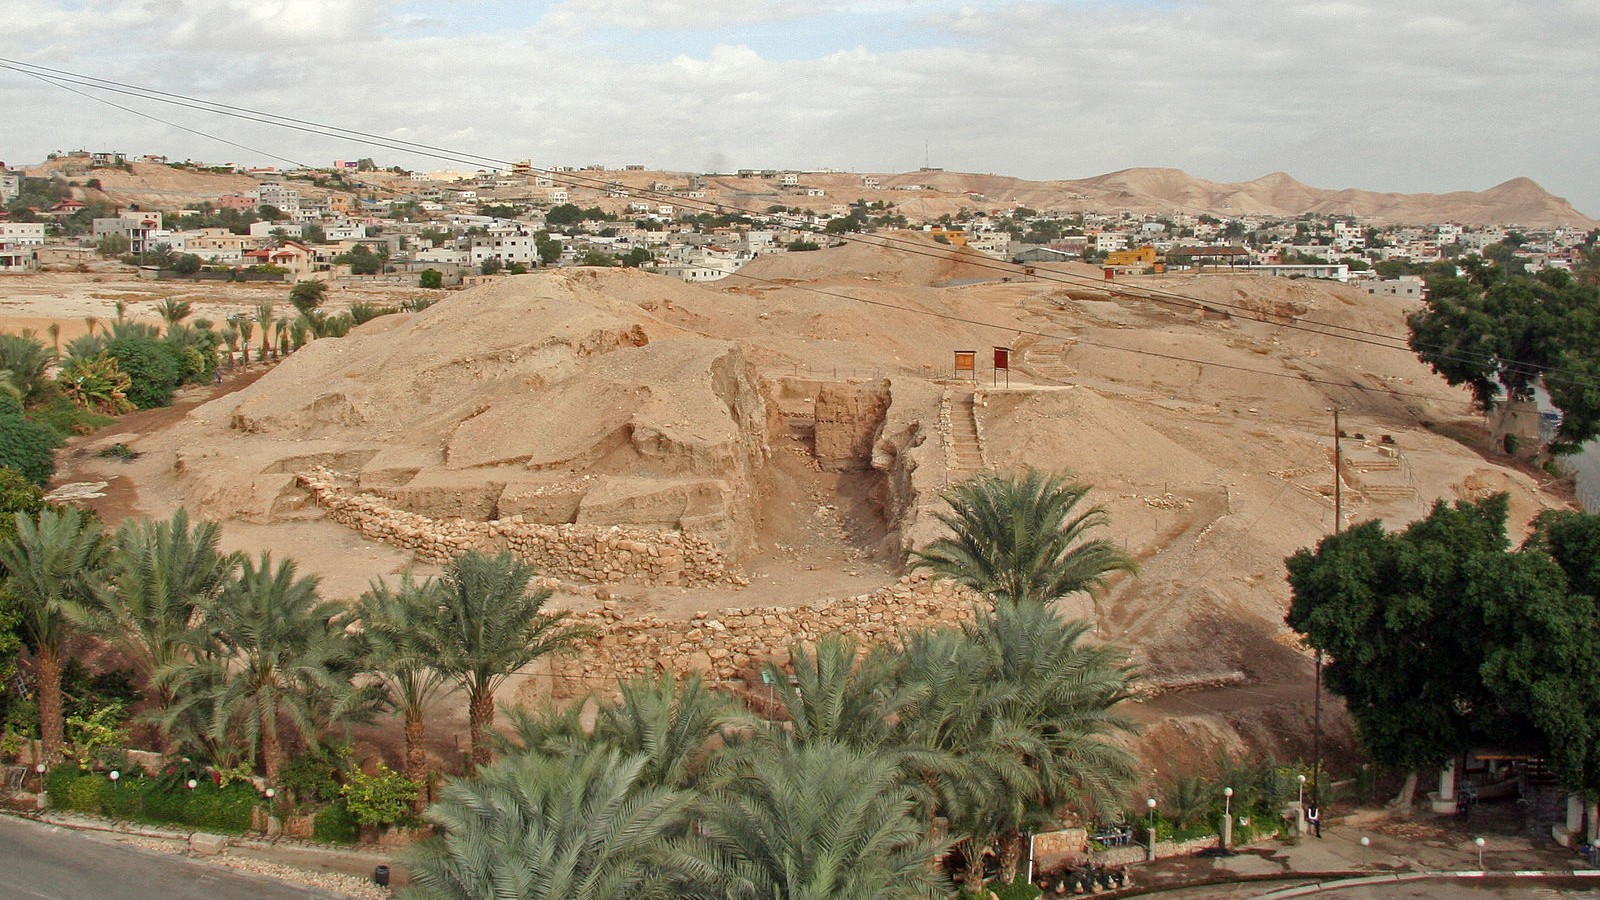 Le site de Tell al-Sultan est situé entre la ville palestinienne de Jéricho et la mer Morte (Wikimedia Commons)